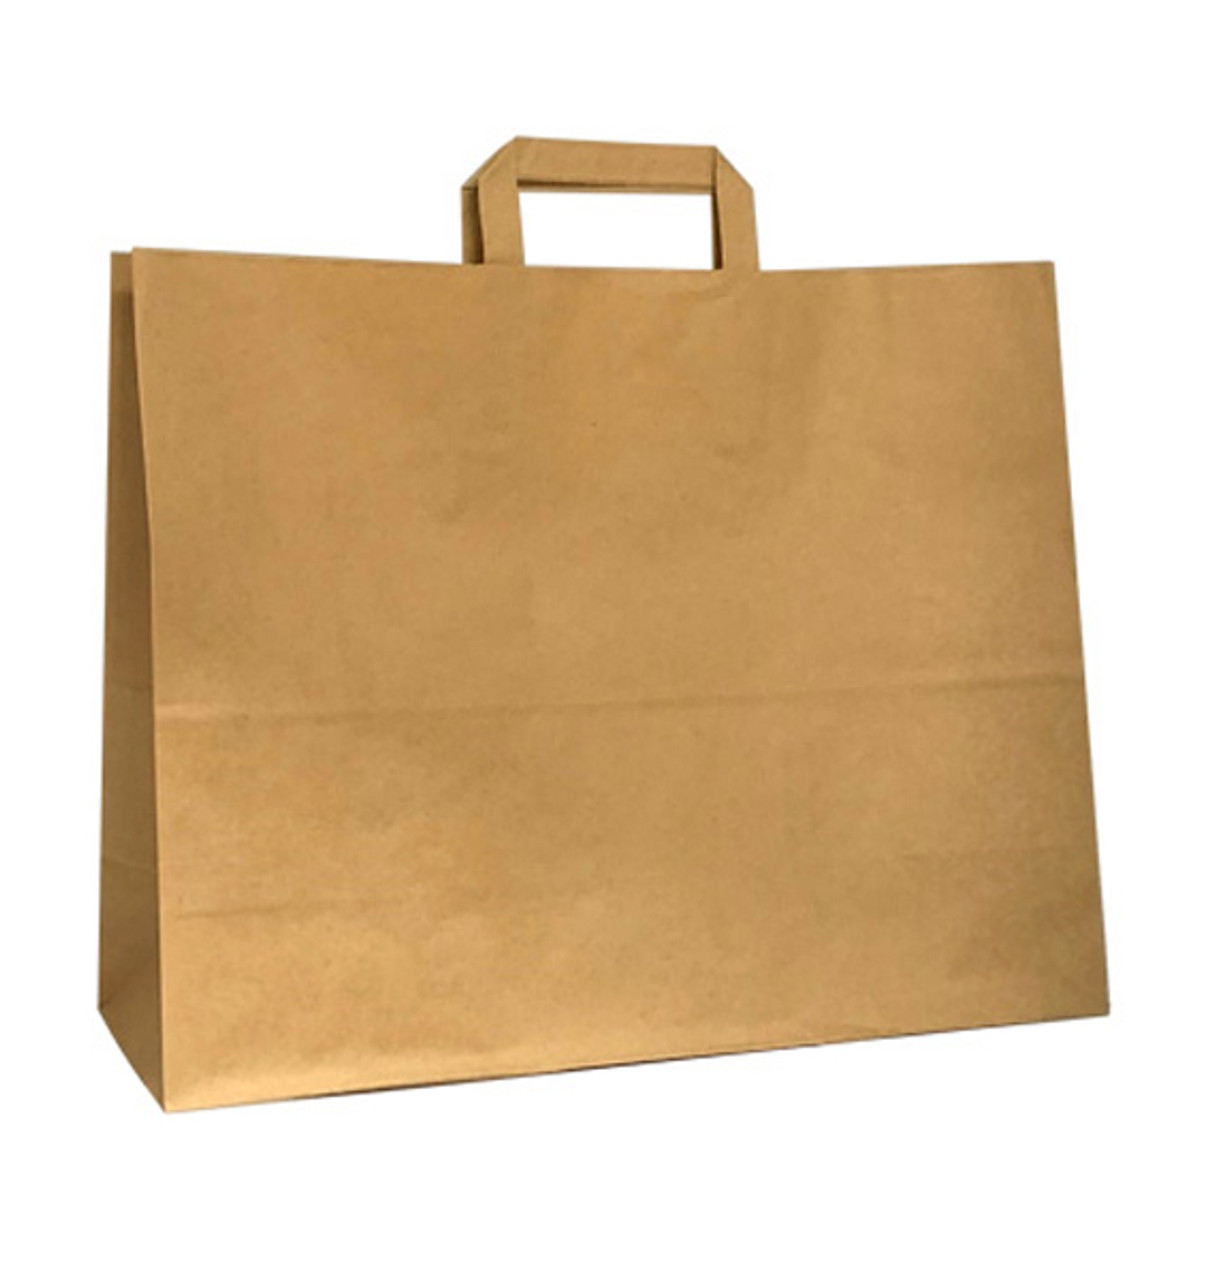 Fashion 16"x6"x12.5" HD Square Handle Kraft Paper Shopping Bags